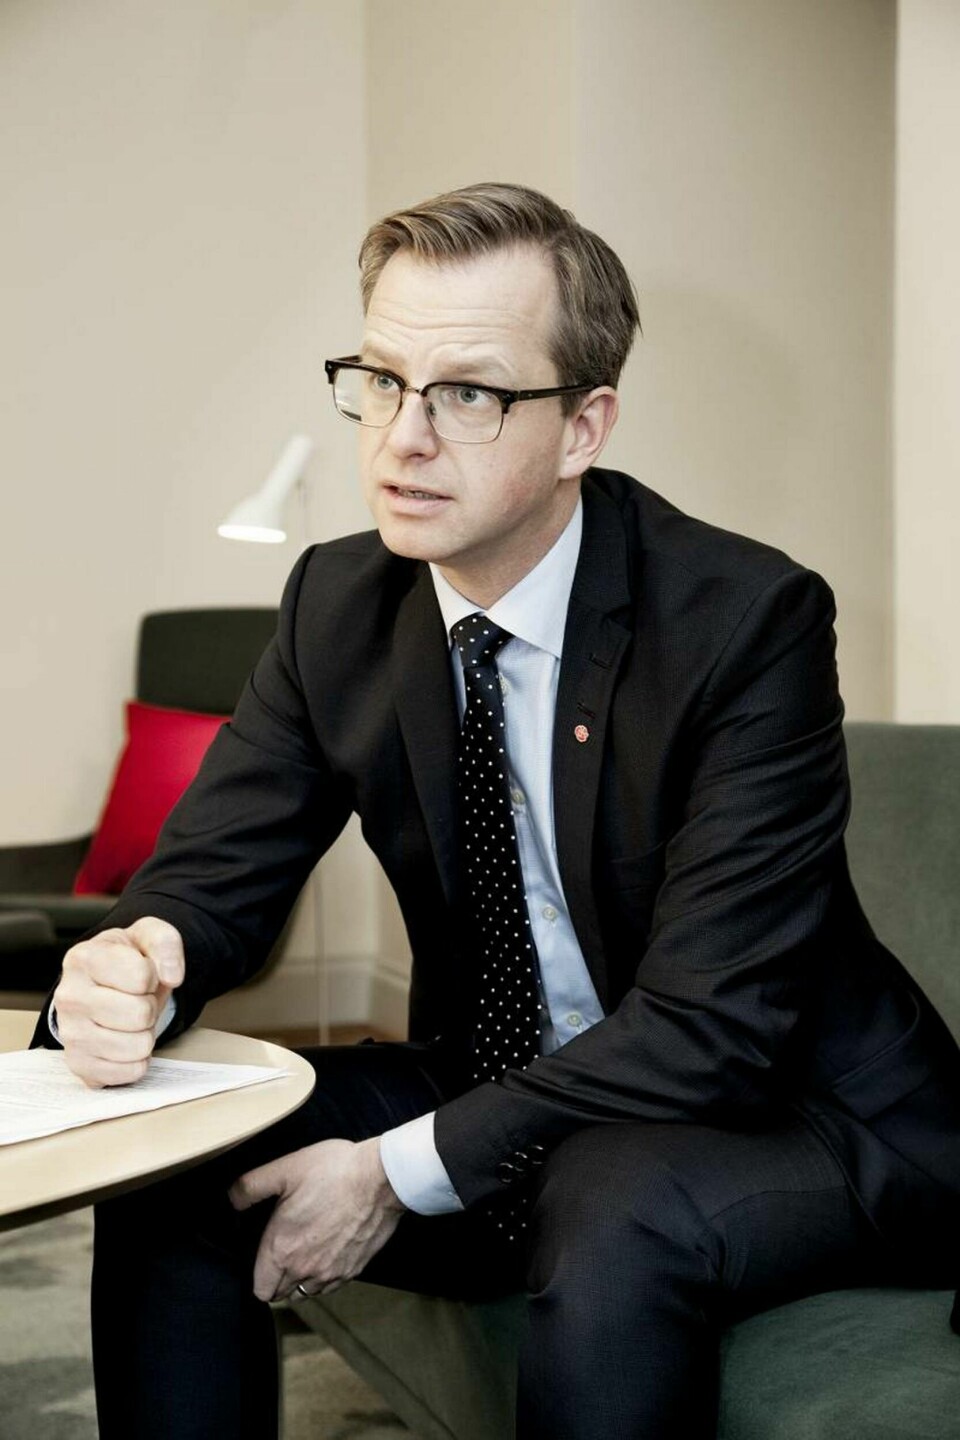 43-årige socialdemokraten Mikael Damberg är sedan valet Sveriges närings- och innovationsminister. Foto: Jörgen Appelgren